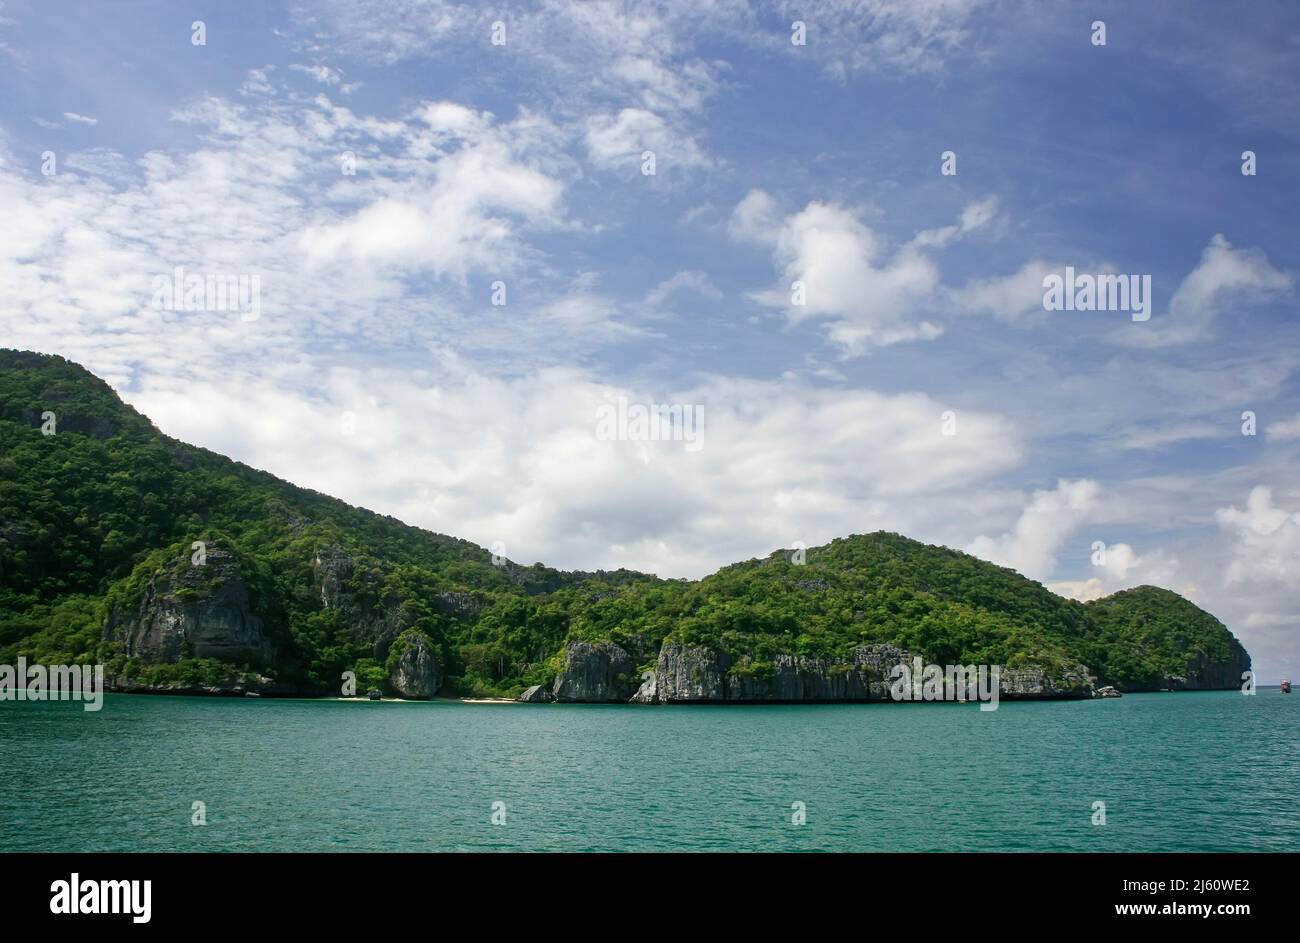 Ang Thong National Marine Park, Thailand Stock Photo